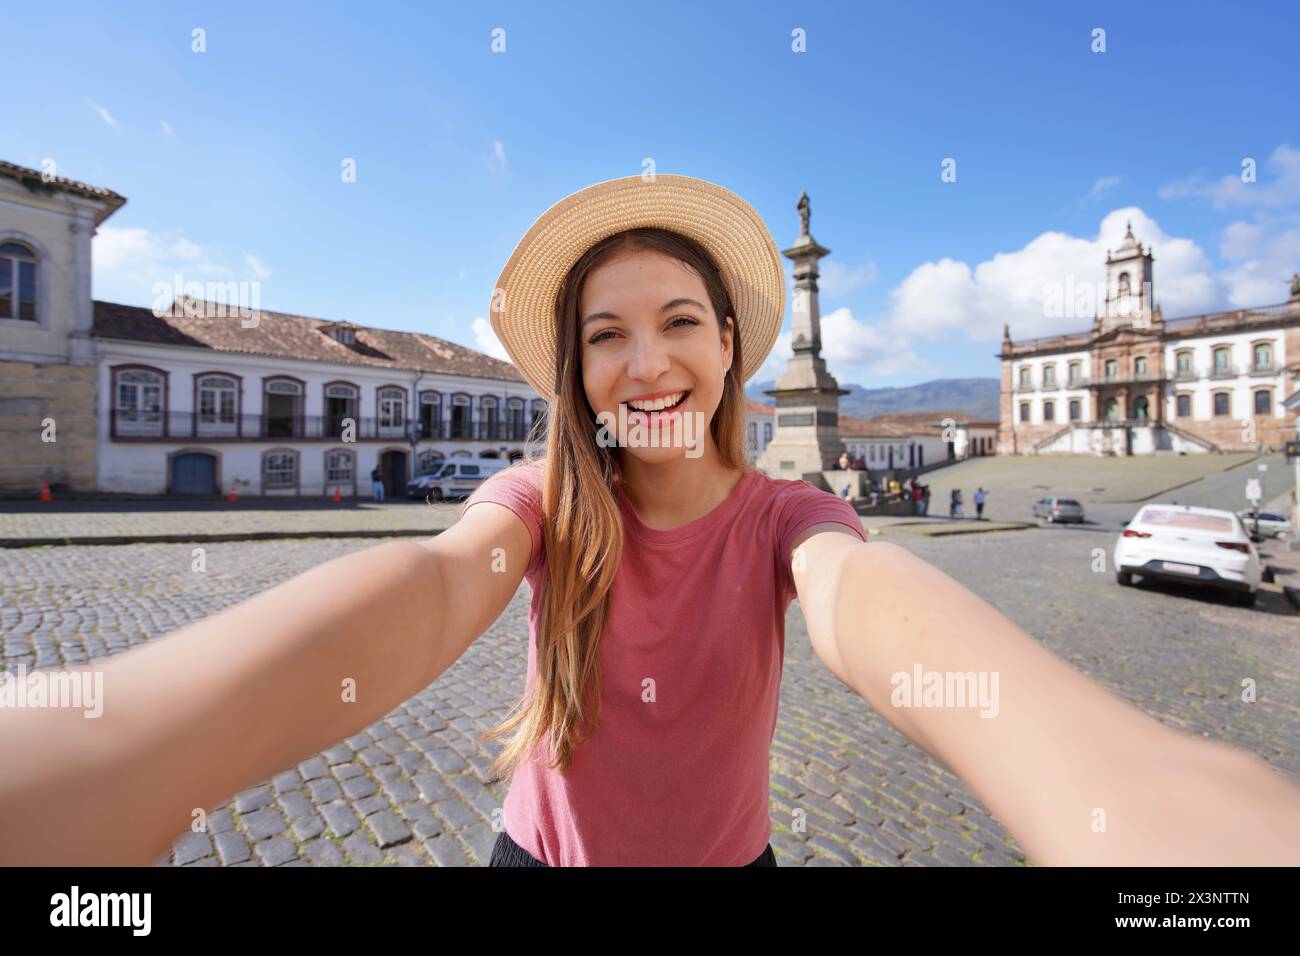 Belle fille voyageuse prend autoportrait sur la place Tiradentes célèbre monument d'Ouro Preto, site du patrimoine mondial de l'UNESCO dans l'état du Minas Gerais, Braz Banque D'Images